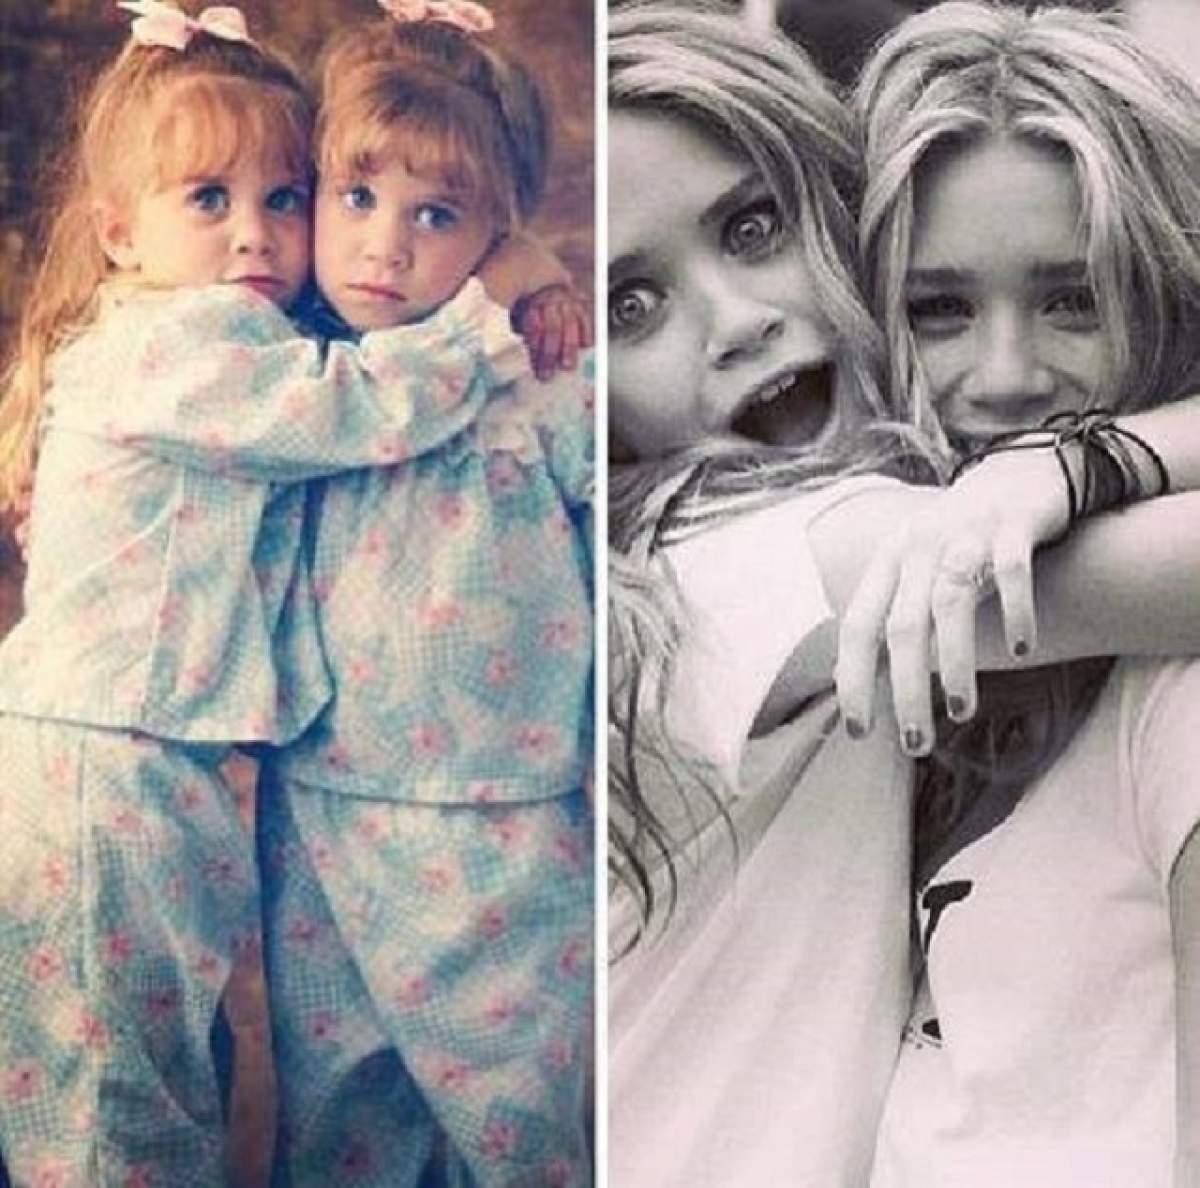 Îţi mai aminteşti de gemenele Olsen? Cum arată acum cele care au marcat copilăria multor generaţii?